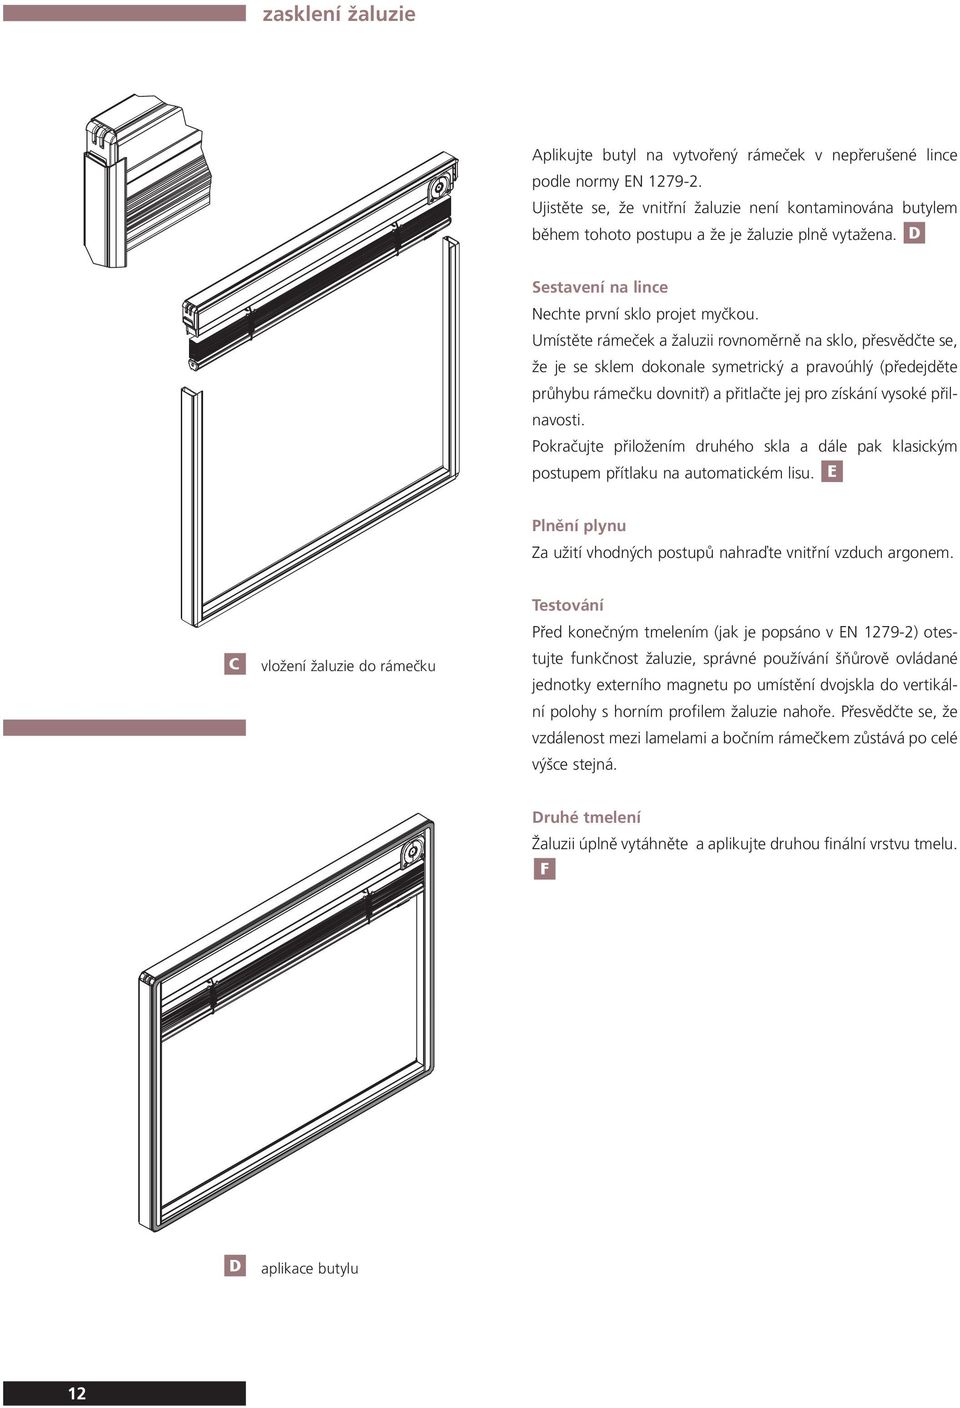 Umístěte rámeček a žaluzii rovnoměrně na sklo, přesvědčte se, že je se sklem dokonale symetrický a pravoúhlý (předejděte průhybu rámečku dovnitř) a přitlačte jej pro získání vysoké přilnavosti.